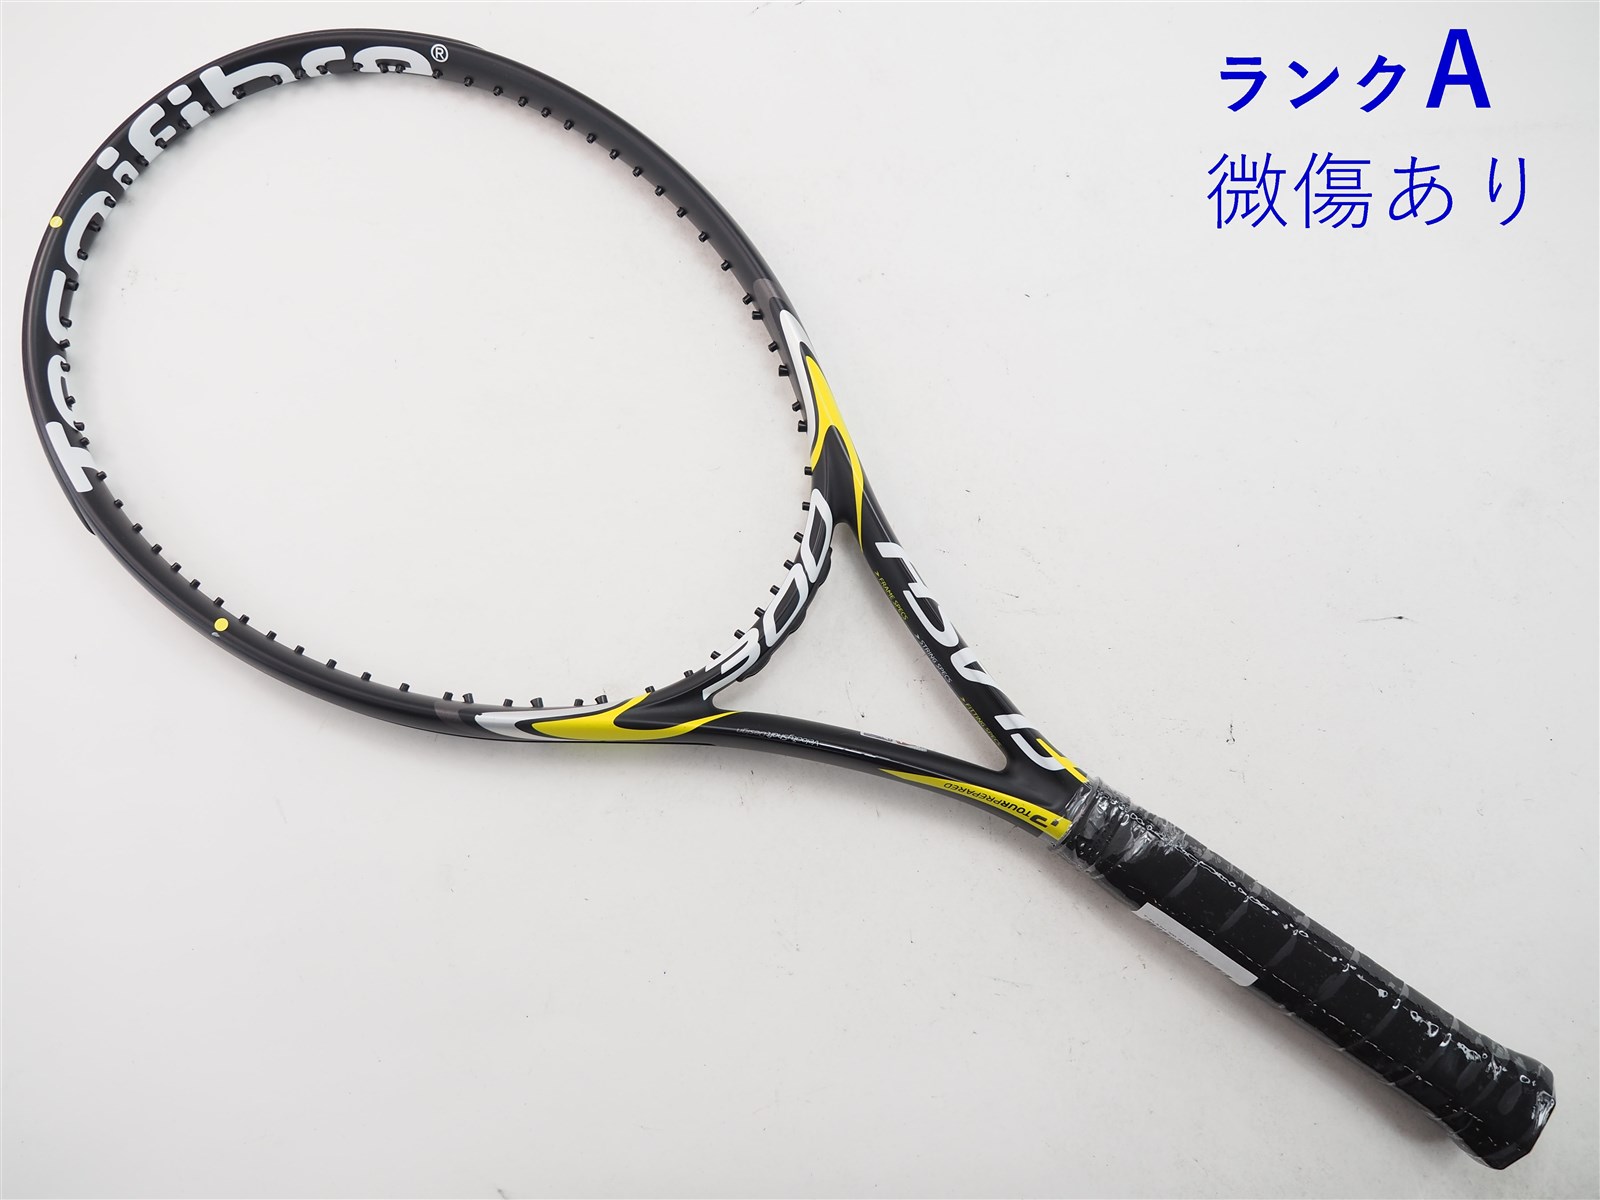 テニスラケット テクニファイバー ティーフラッシュ 300 2014年モデル (G3)Tecnifibre T-FLASH 300 2014